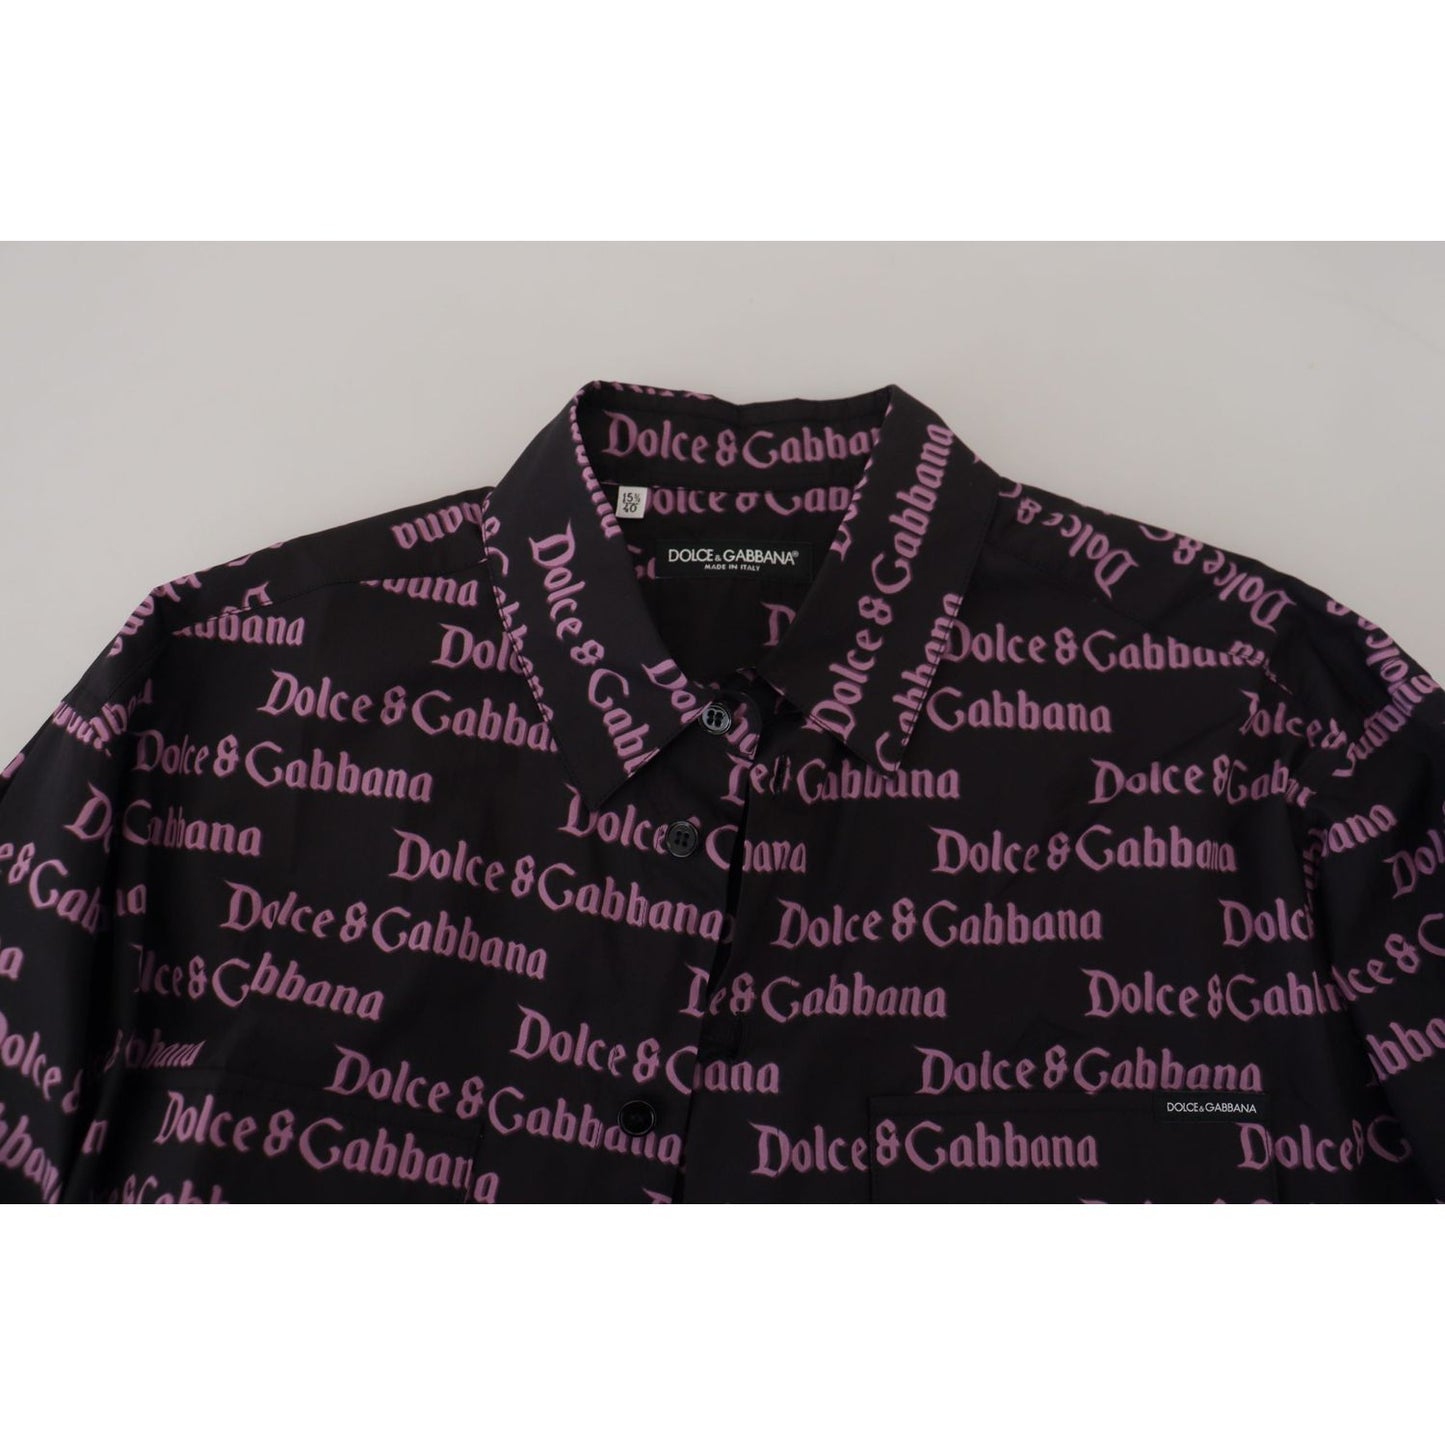 Dolce & Gabbana Elegant Slim Fit Black Dress Shirt black-purple-logo-slim-dress-formal-shirt